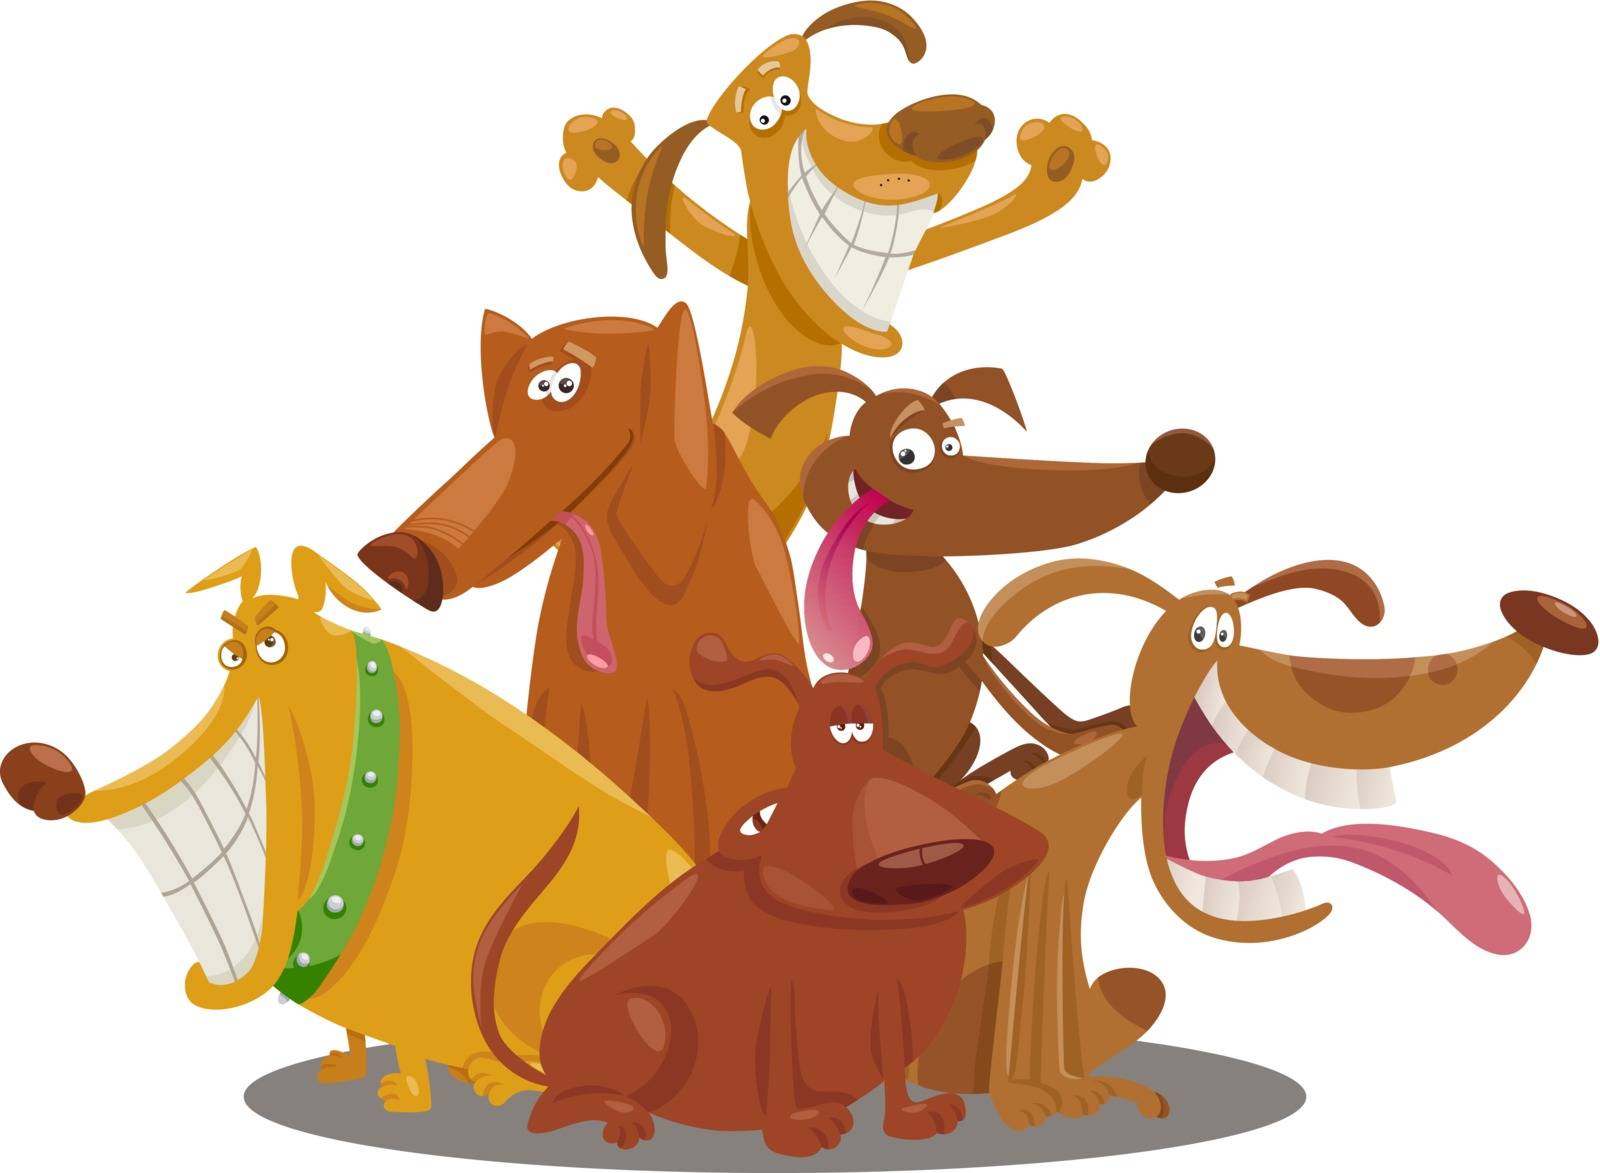 playful dogs group cartoon illustration by izakowski